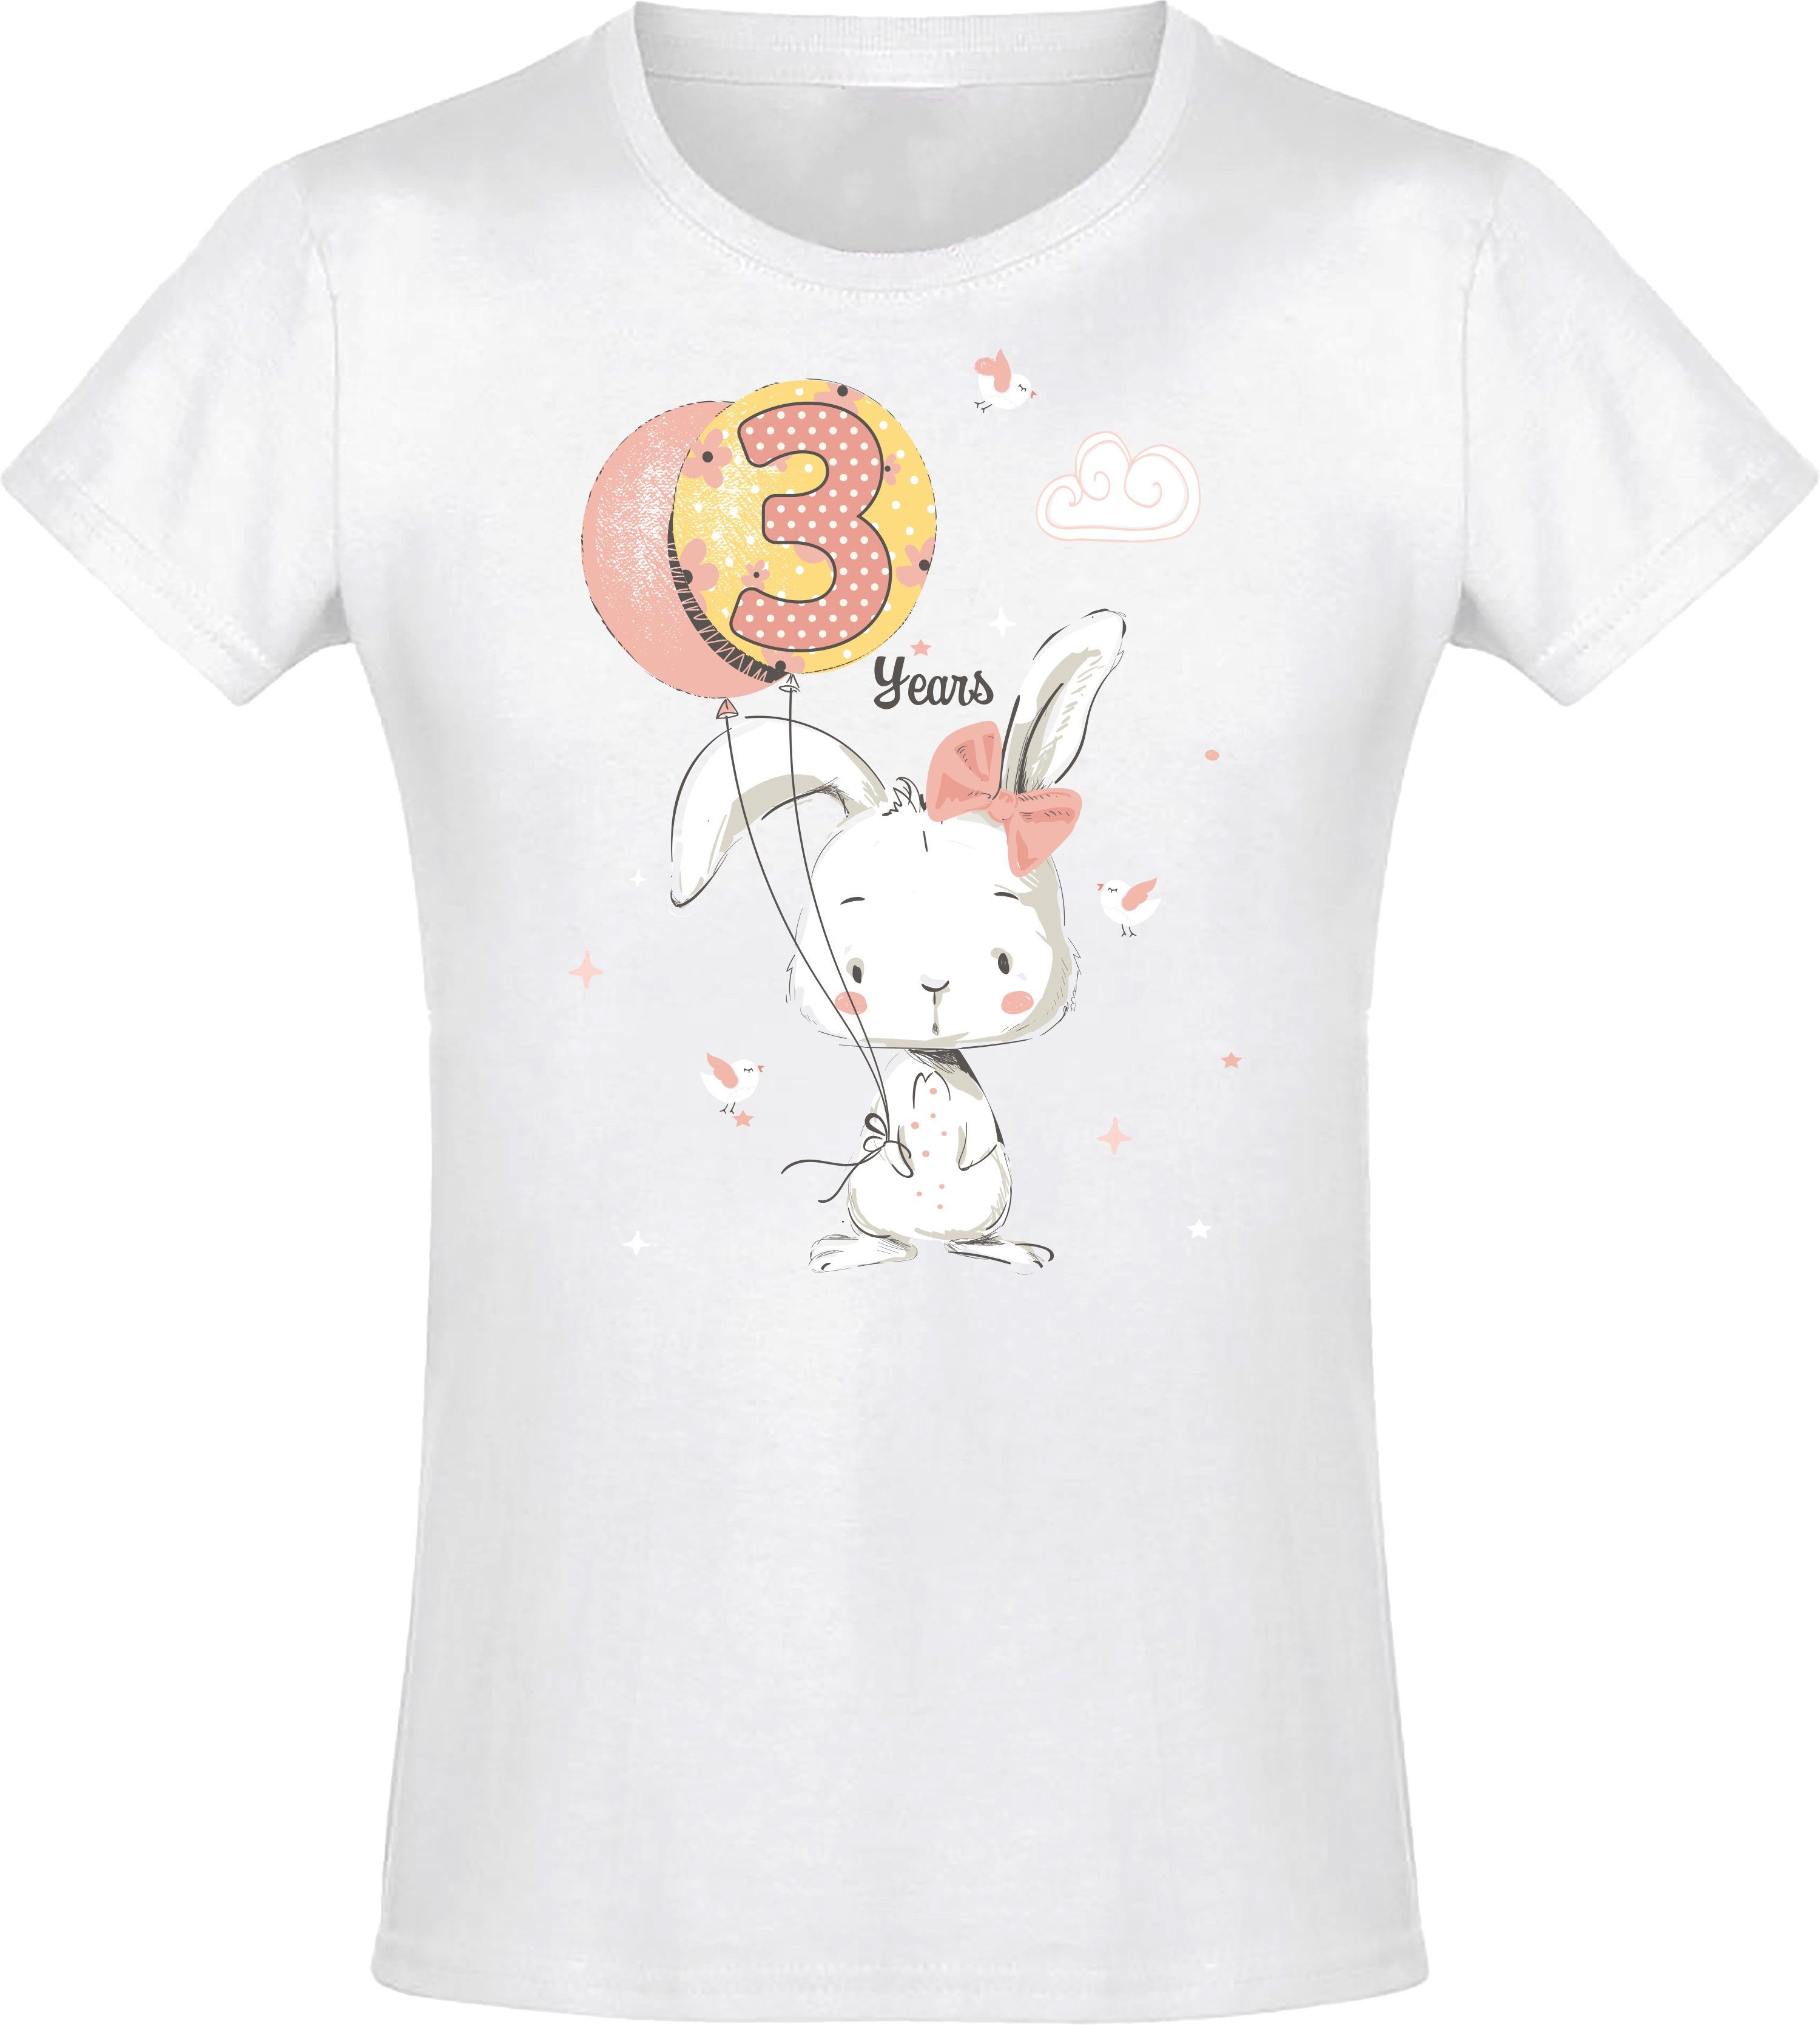 Geburstagsgeschenk Print-Shirt Baddery aus Weiß für Siebdruck, Hase mit Mädchen Jahre 3 : Baumwolle hochwertiger